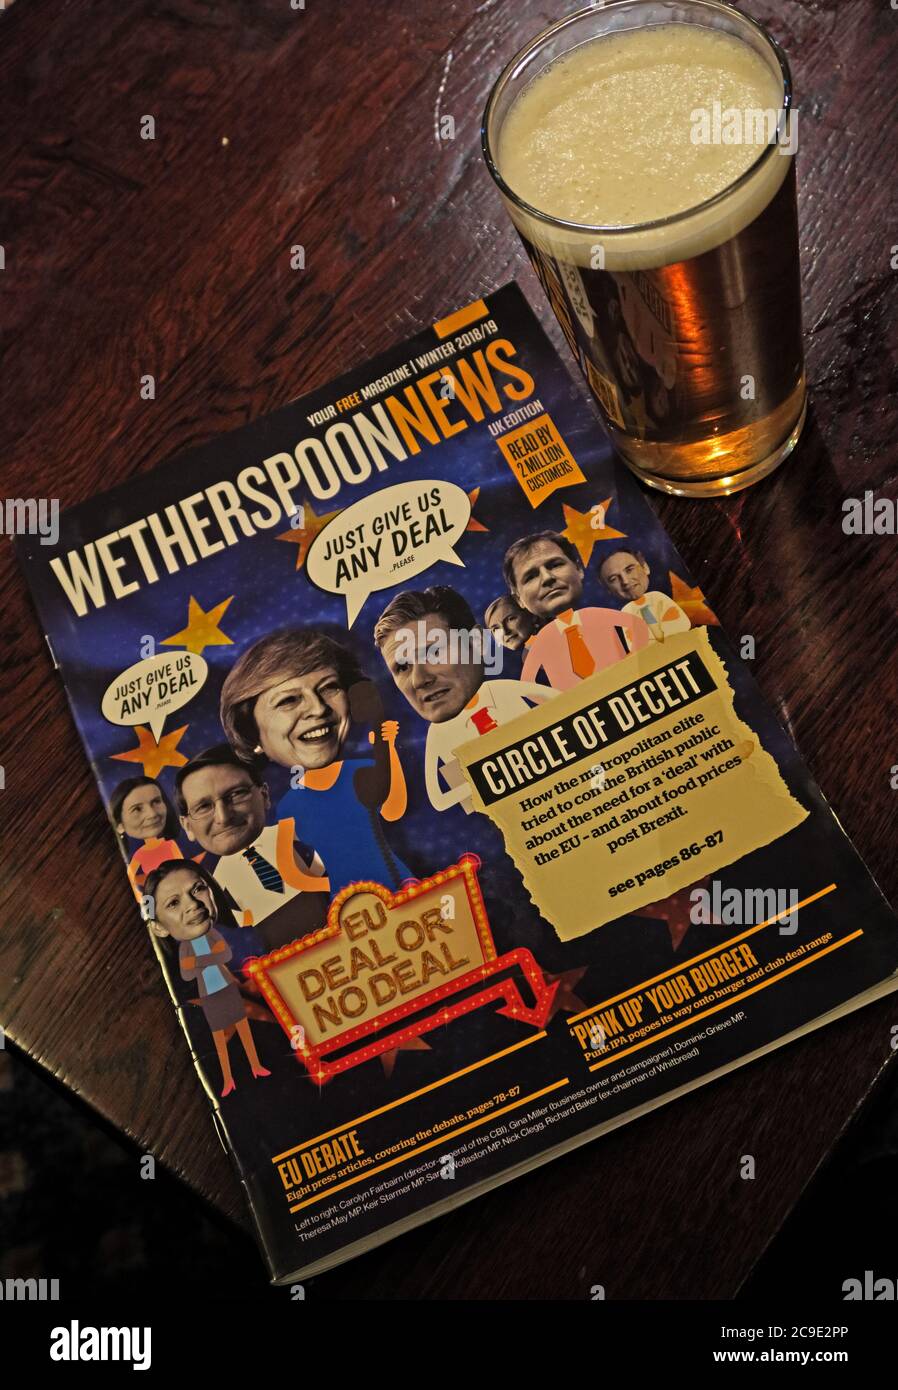 WetherspoonNews Magazine et une pinte d'amer, dans un pub de Wetherspoon, soutenant Brexit Banque D'Images